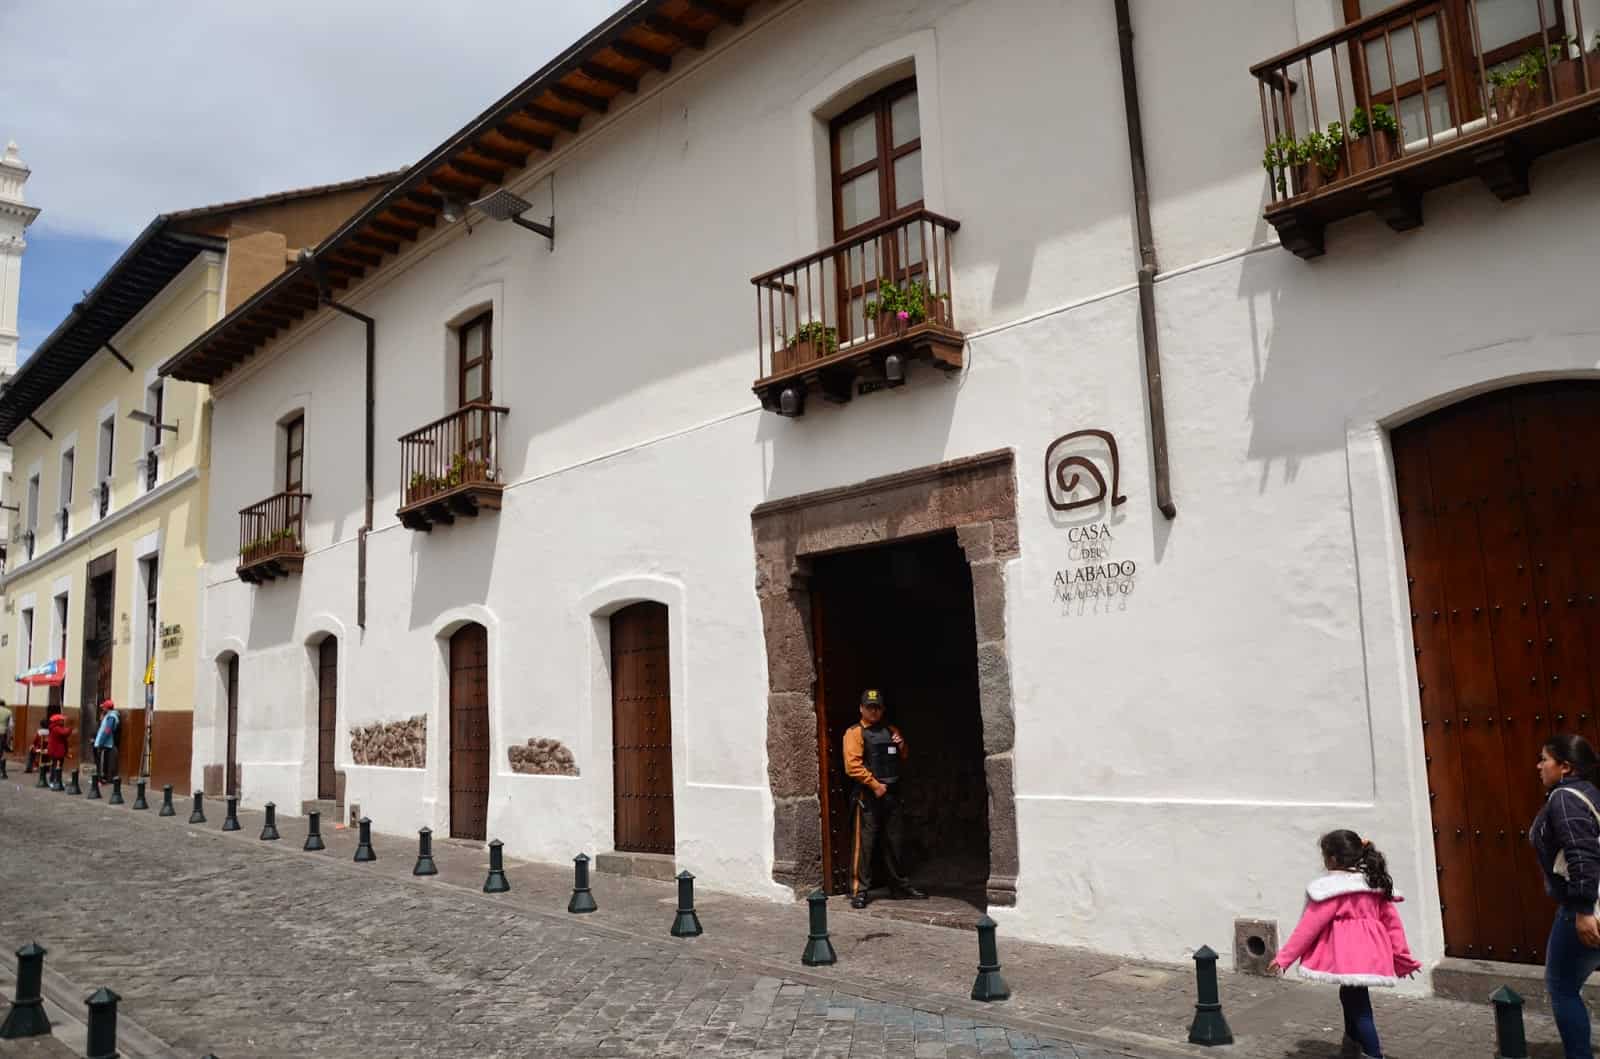 Casa del Alabado in Quito, Ecuador